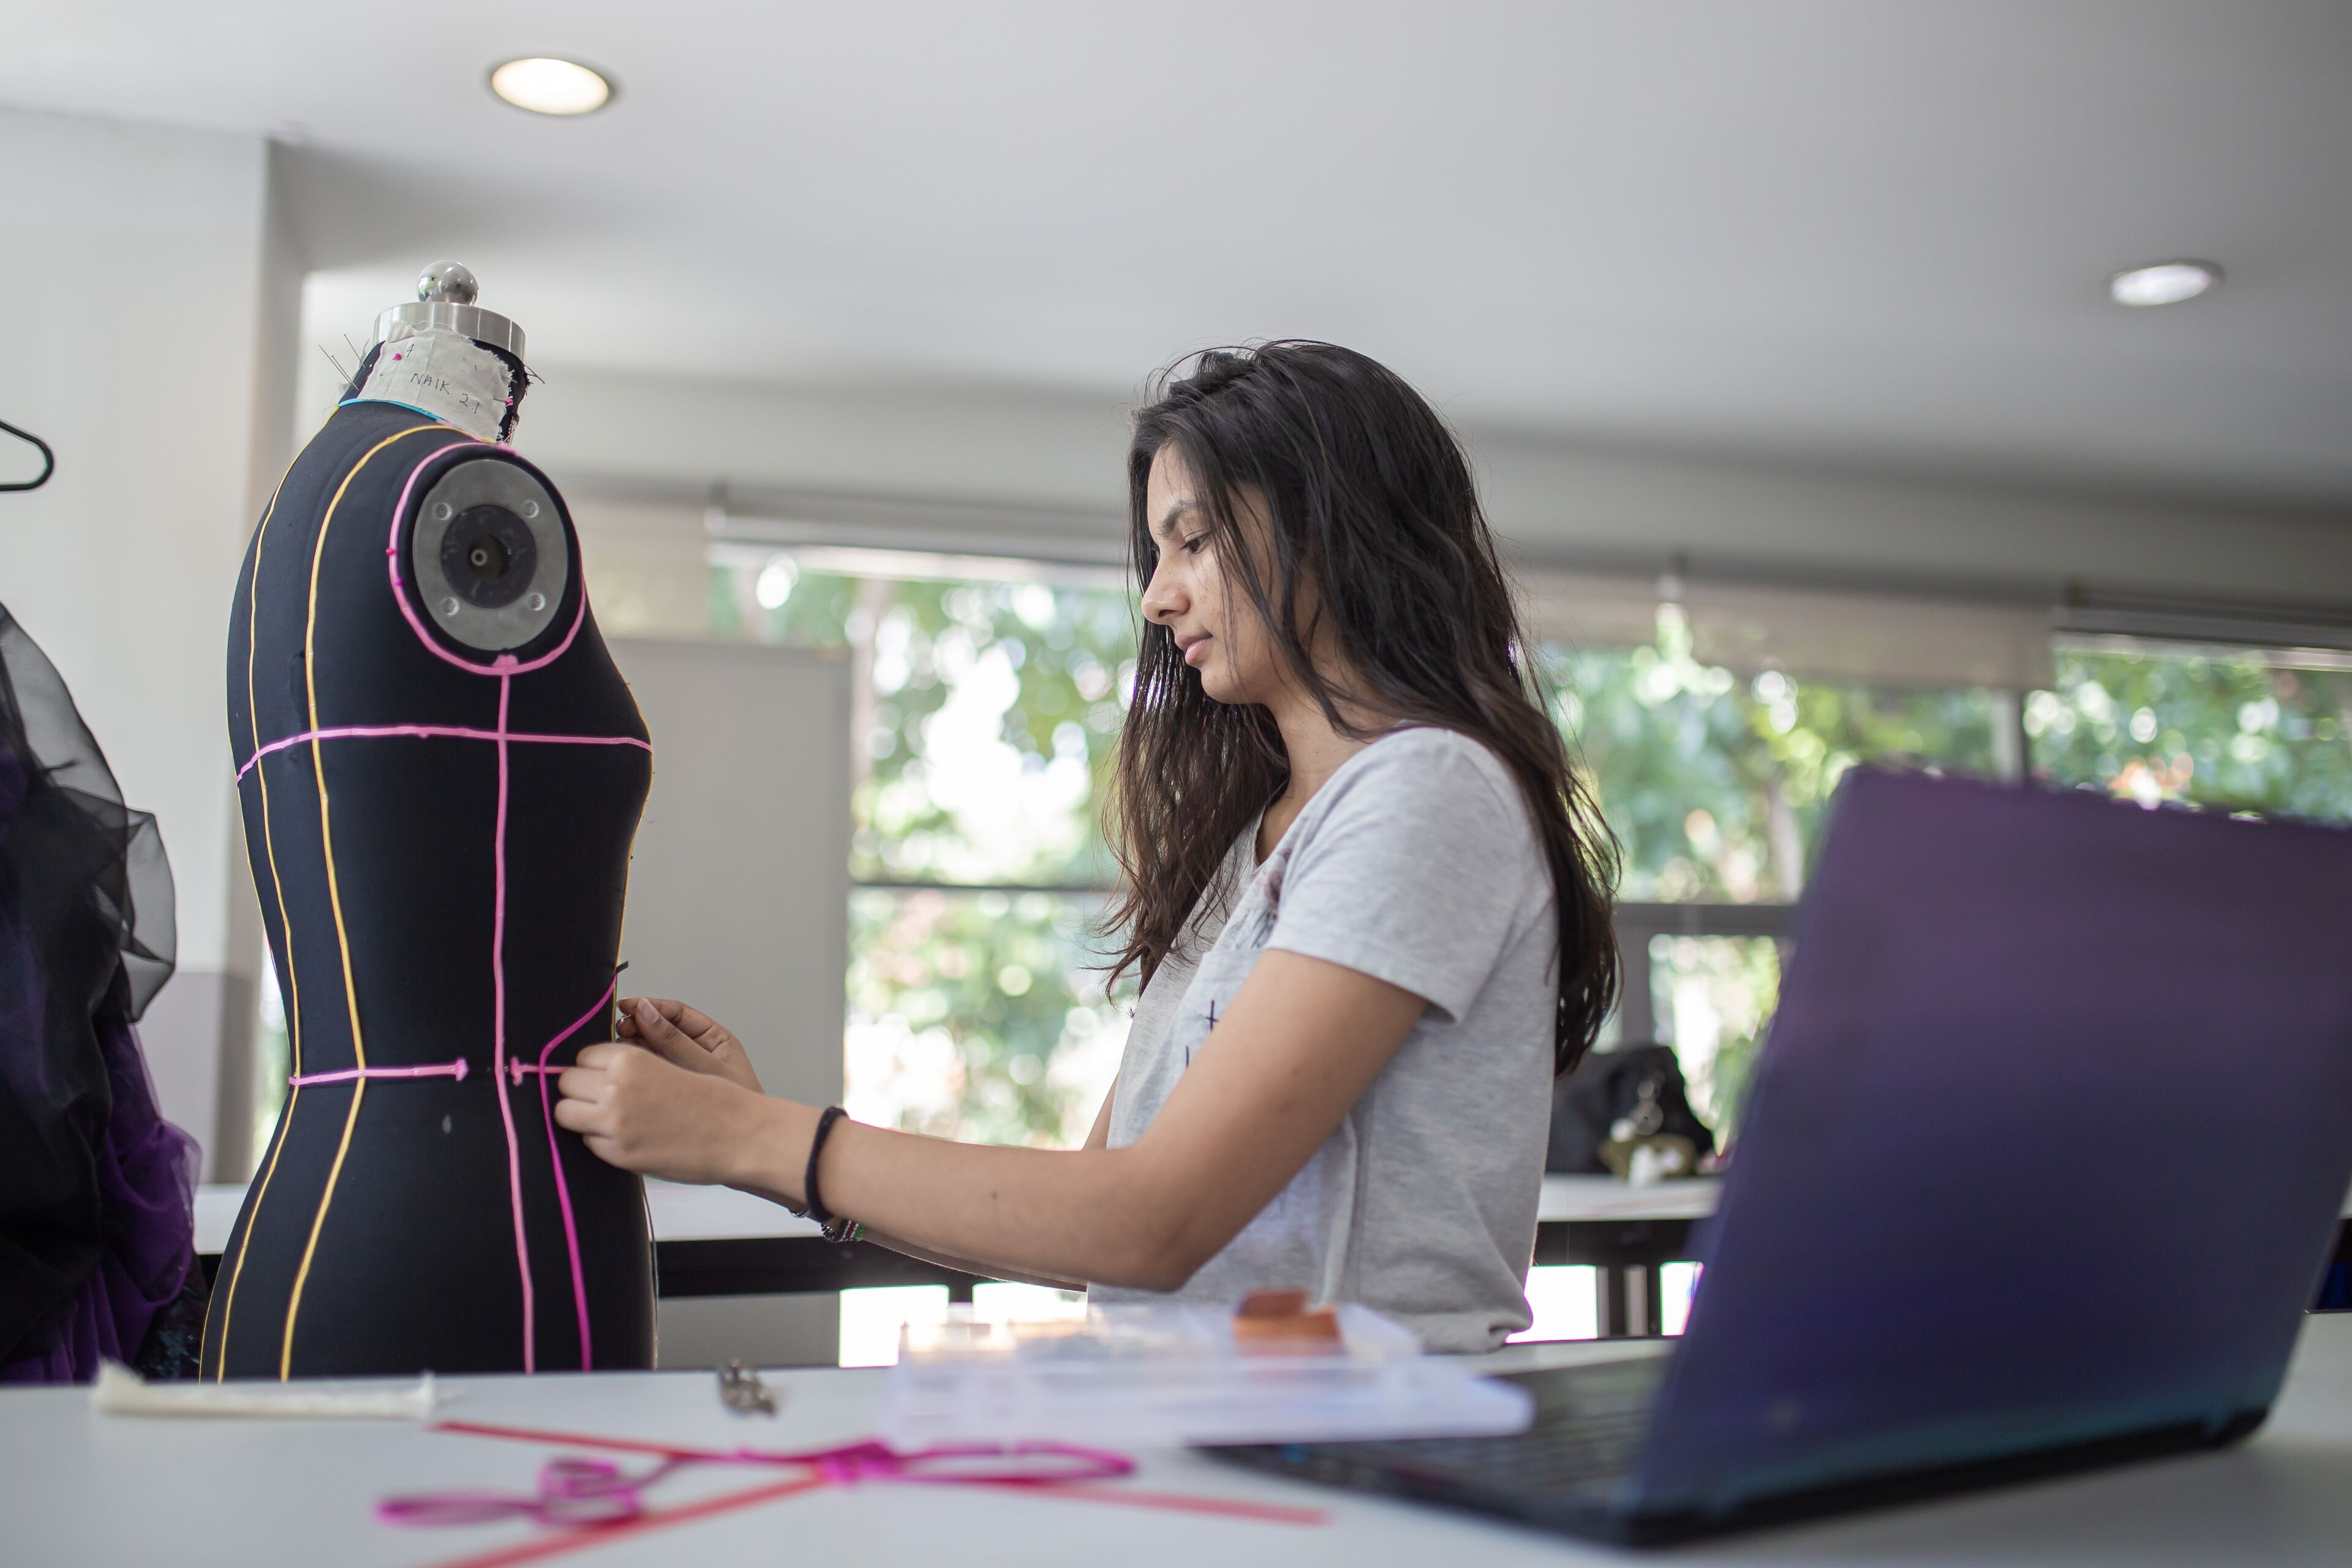 ImageUne créatrice de mode concentrée ajuste un vêtement sur un mannequin à côté de son ordinateur portable dans un atelier bien éclairé.